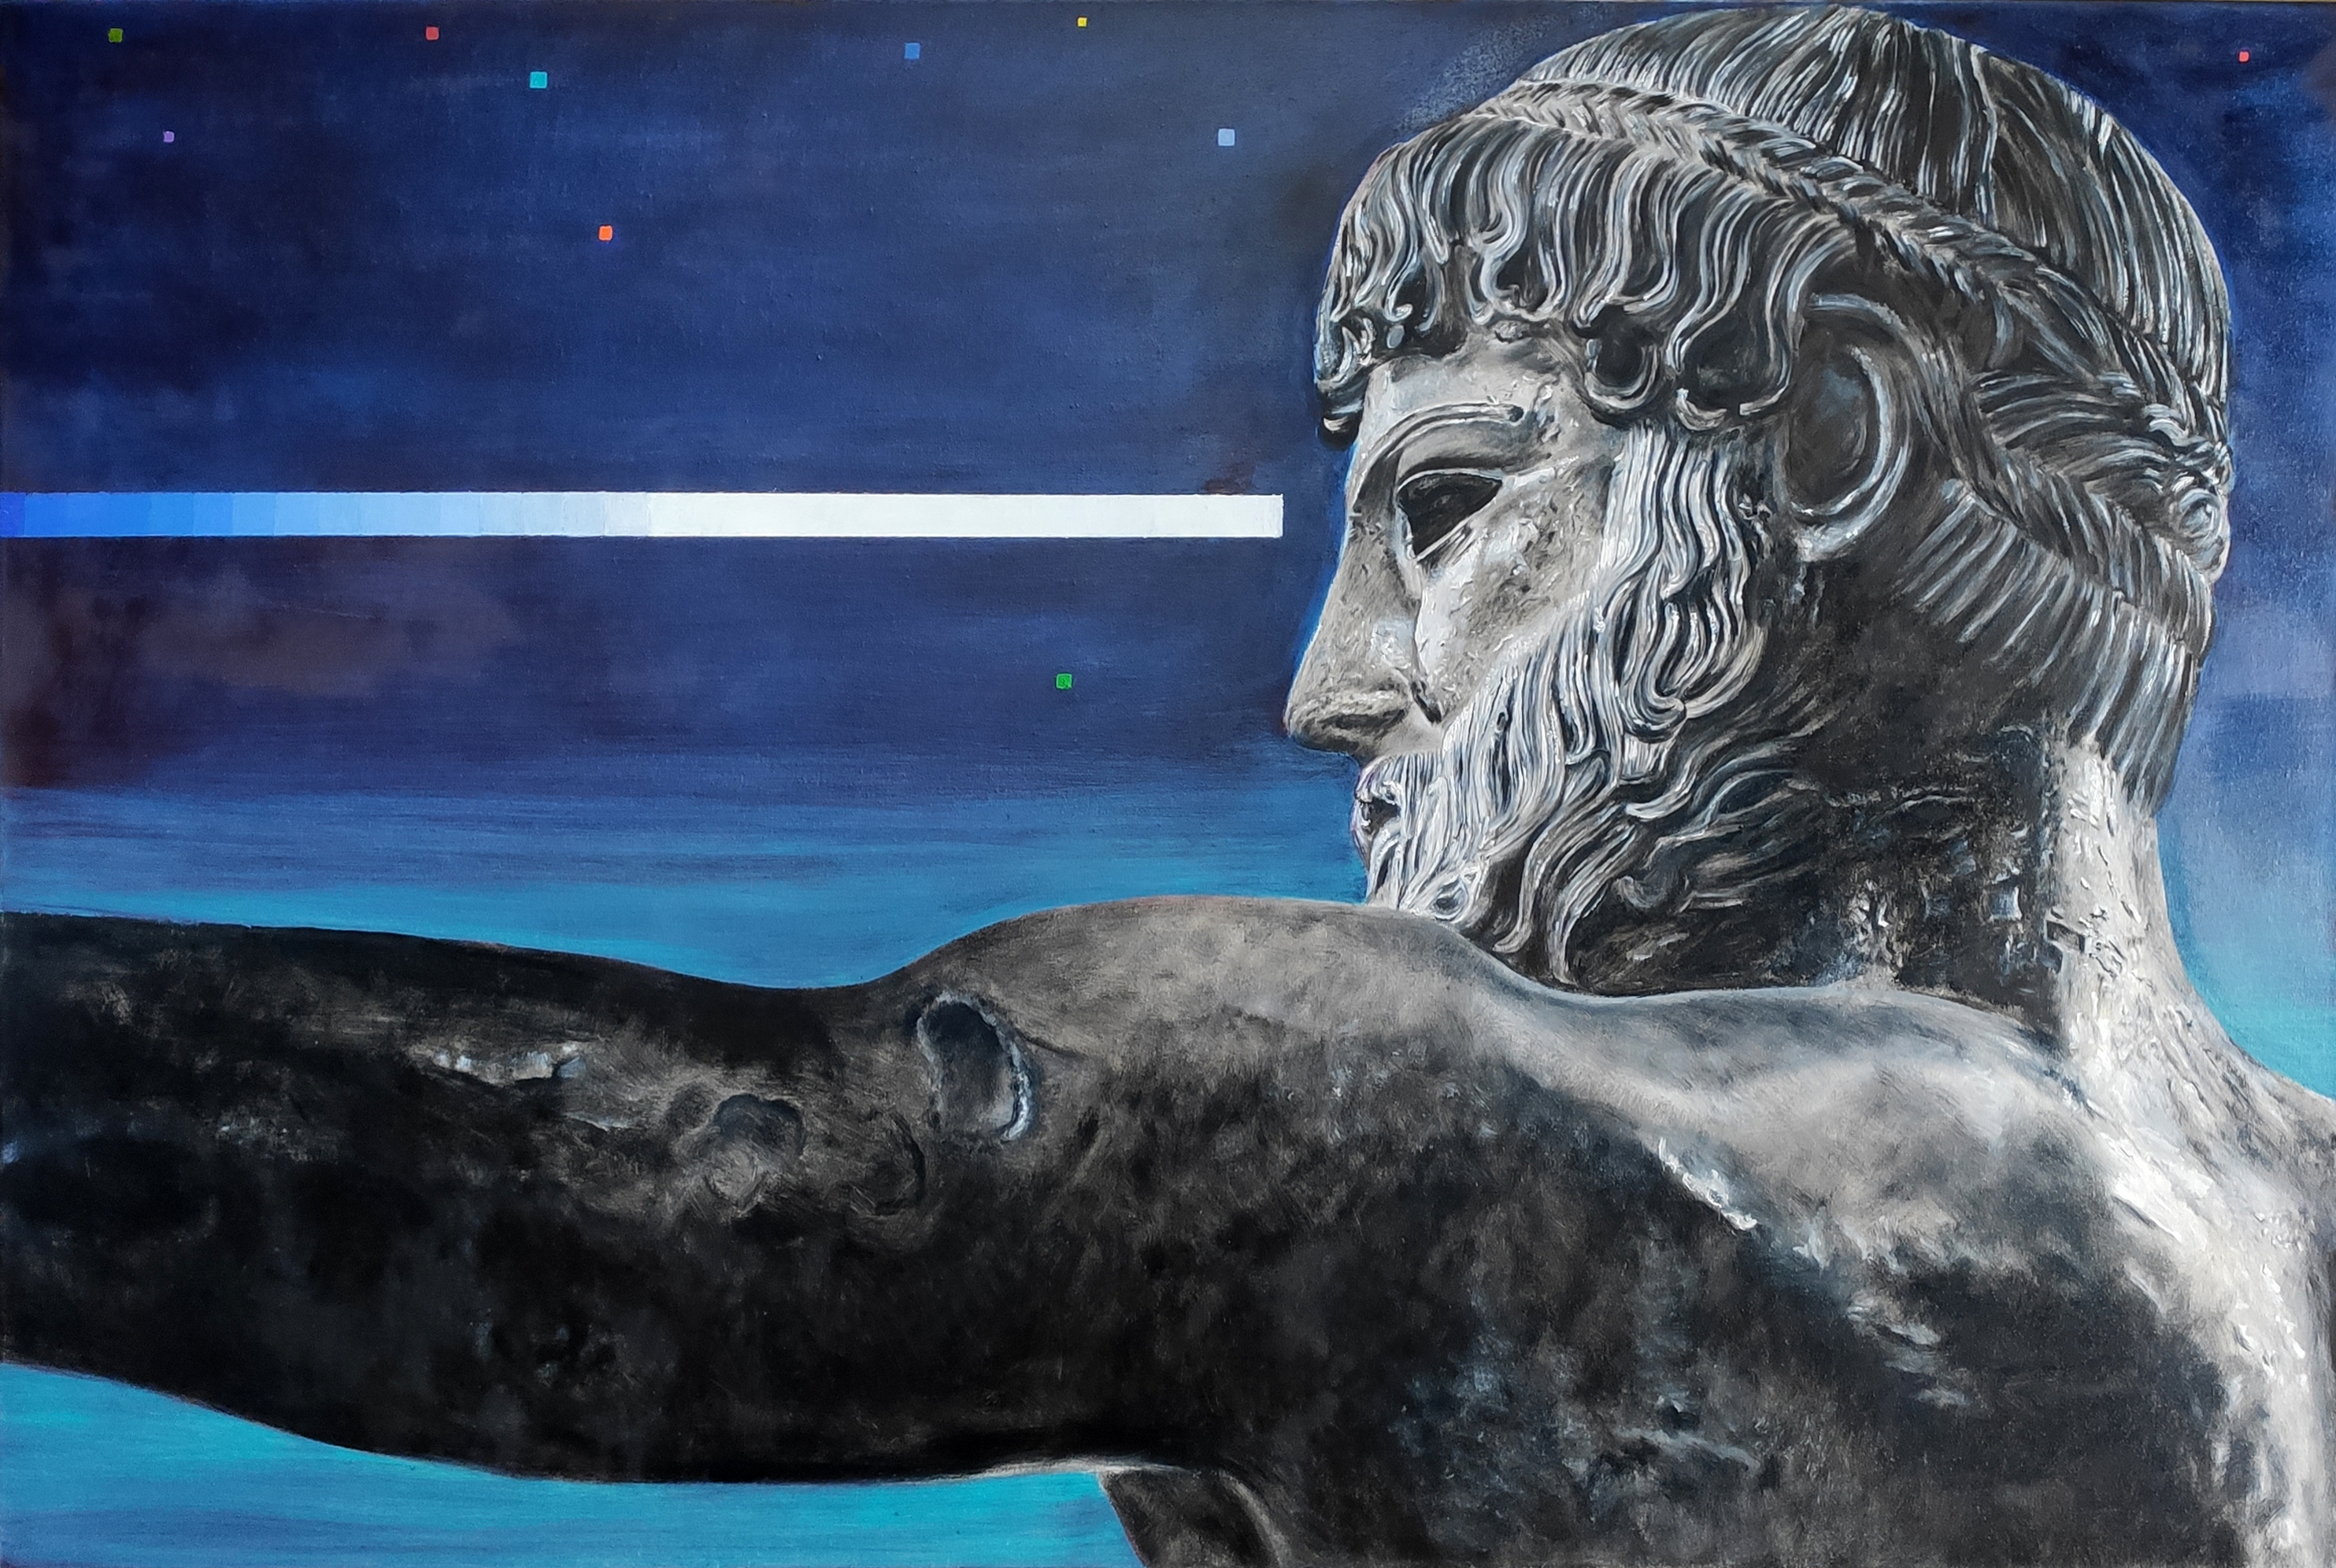 Ćwiczenia grecko-rzymskie – Zeus Poseidon z Artemision, 2022, oil, 75 x115 cm